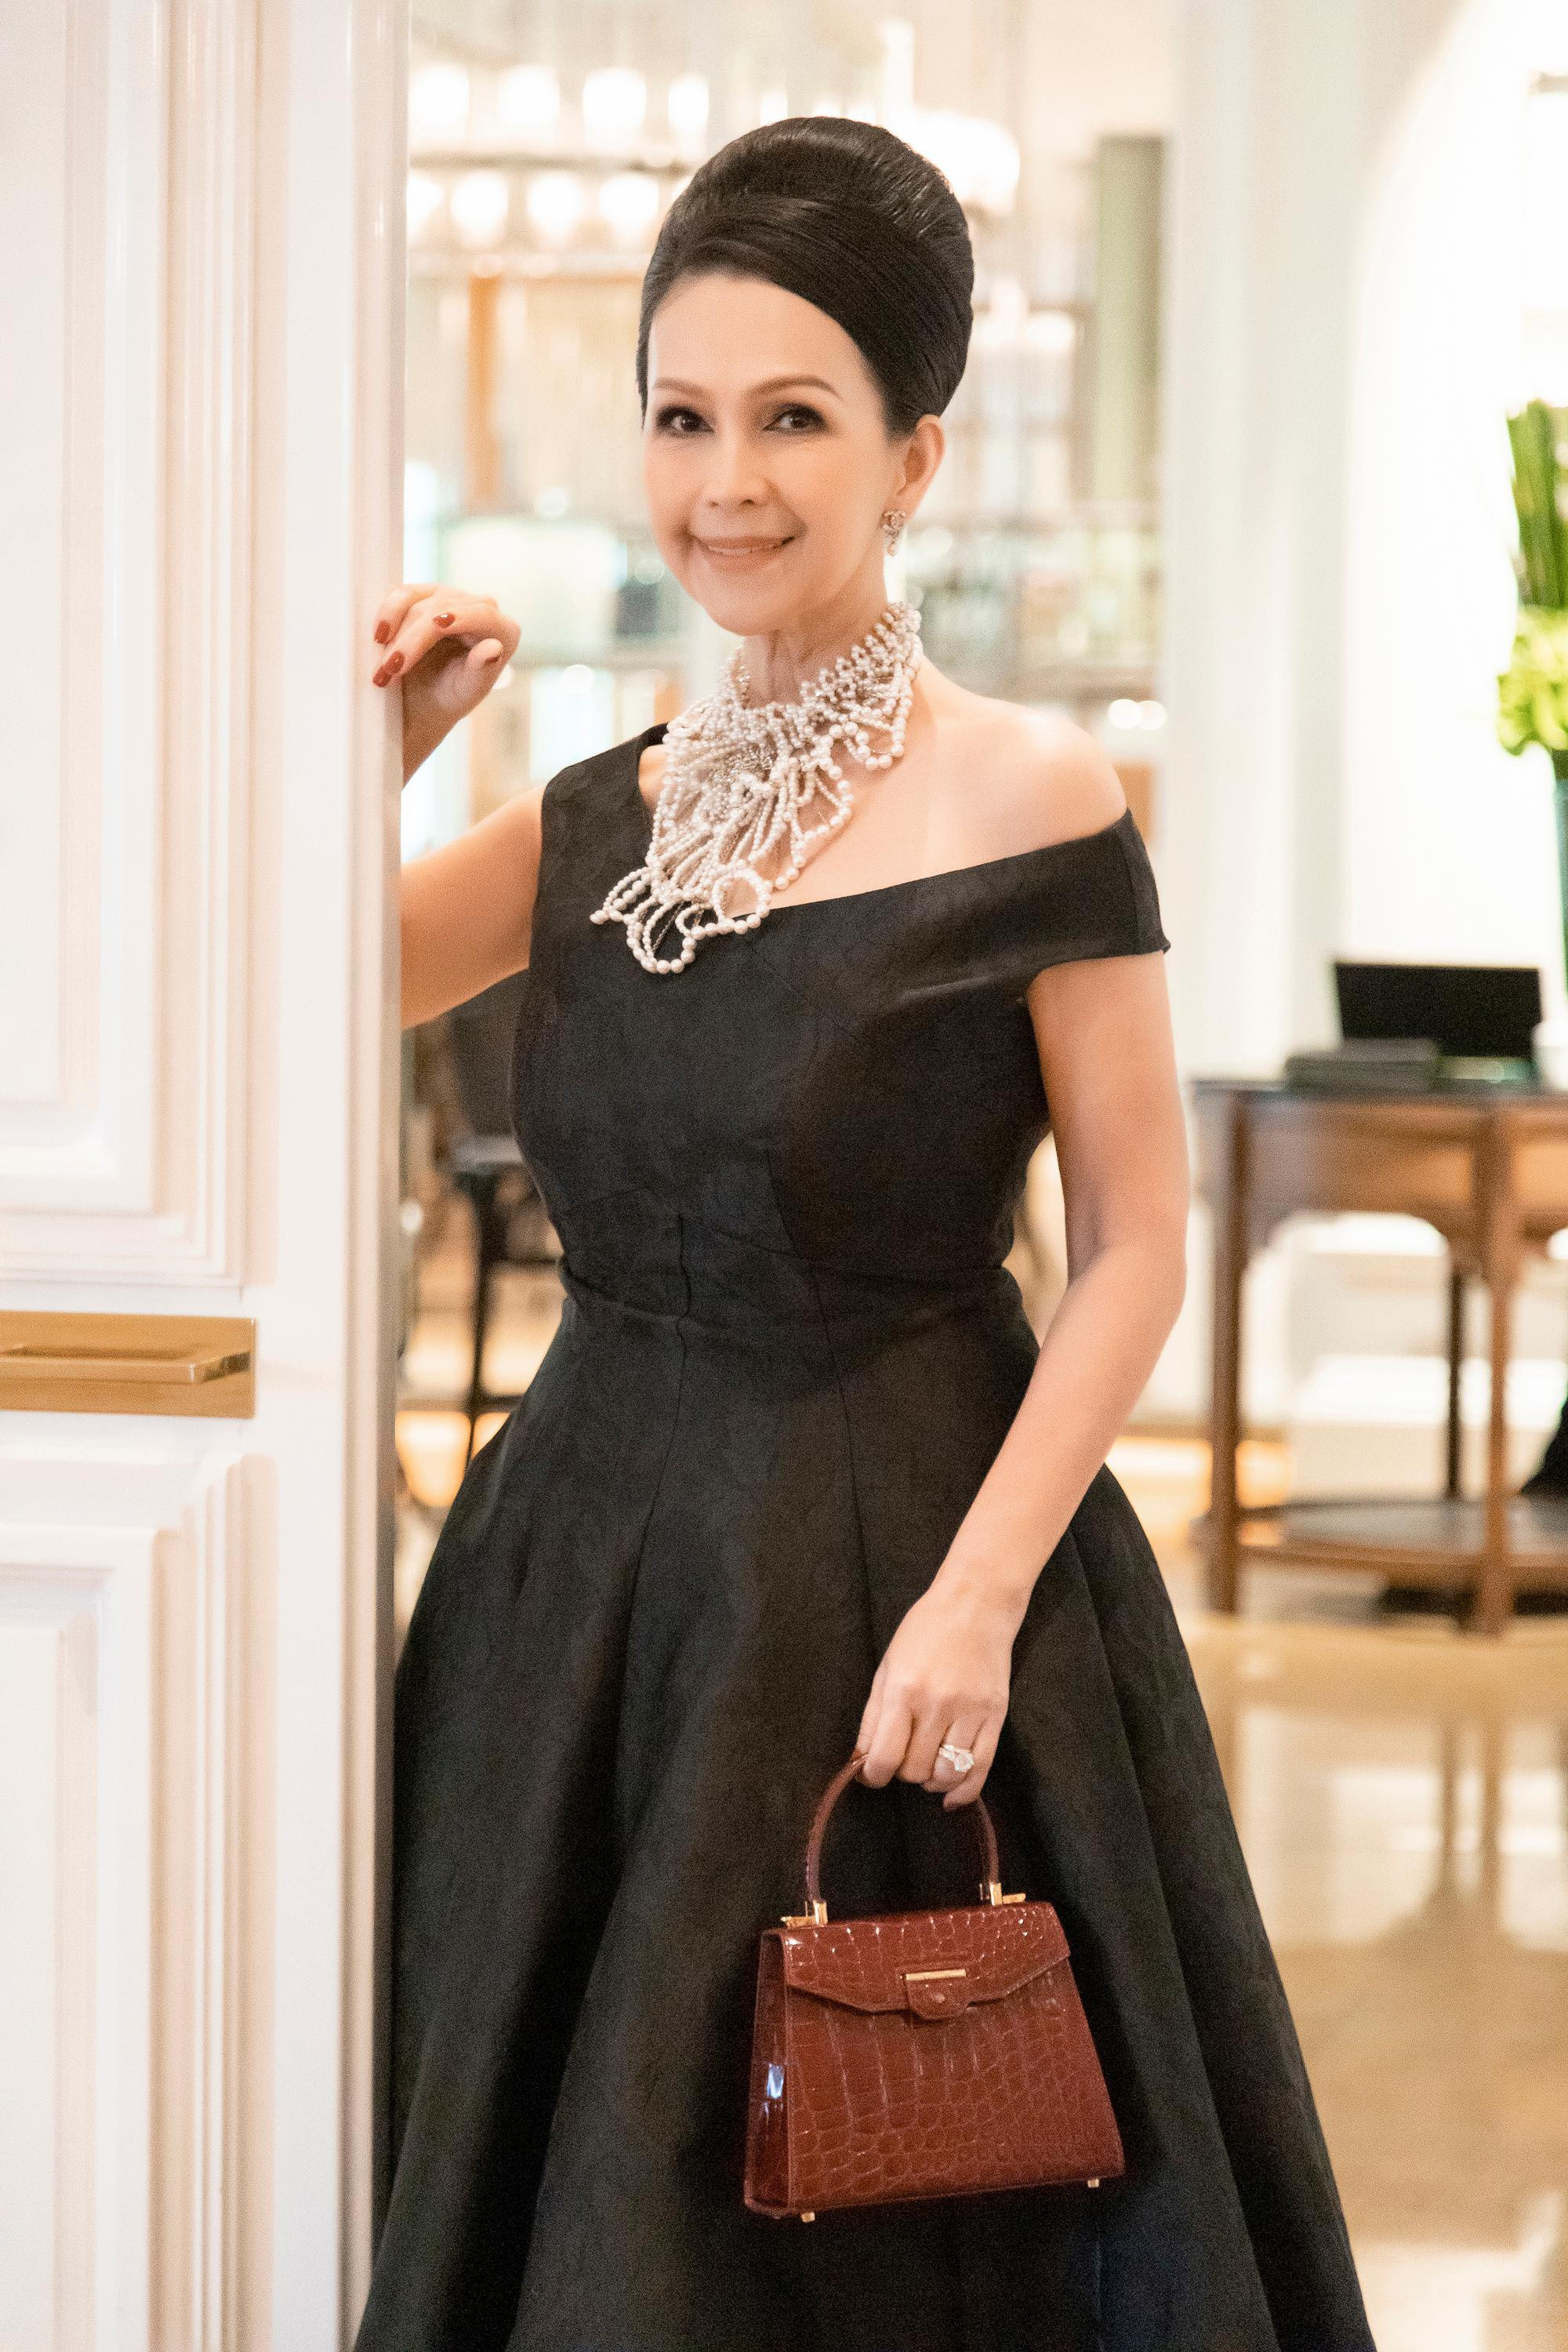 Nữ diễn viên phối cùng vòng cổ ngọc trai của Chanel, giày YSL, hoa tai Chanel, túi da cá sấu và mang nhẫn kim cương được doanh nhân Hà Tôn Đức tặng trong tiệc kỷ niệm 25 năm ngày cưới diễn ra cách đây 2 năm